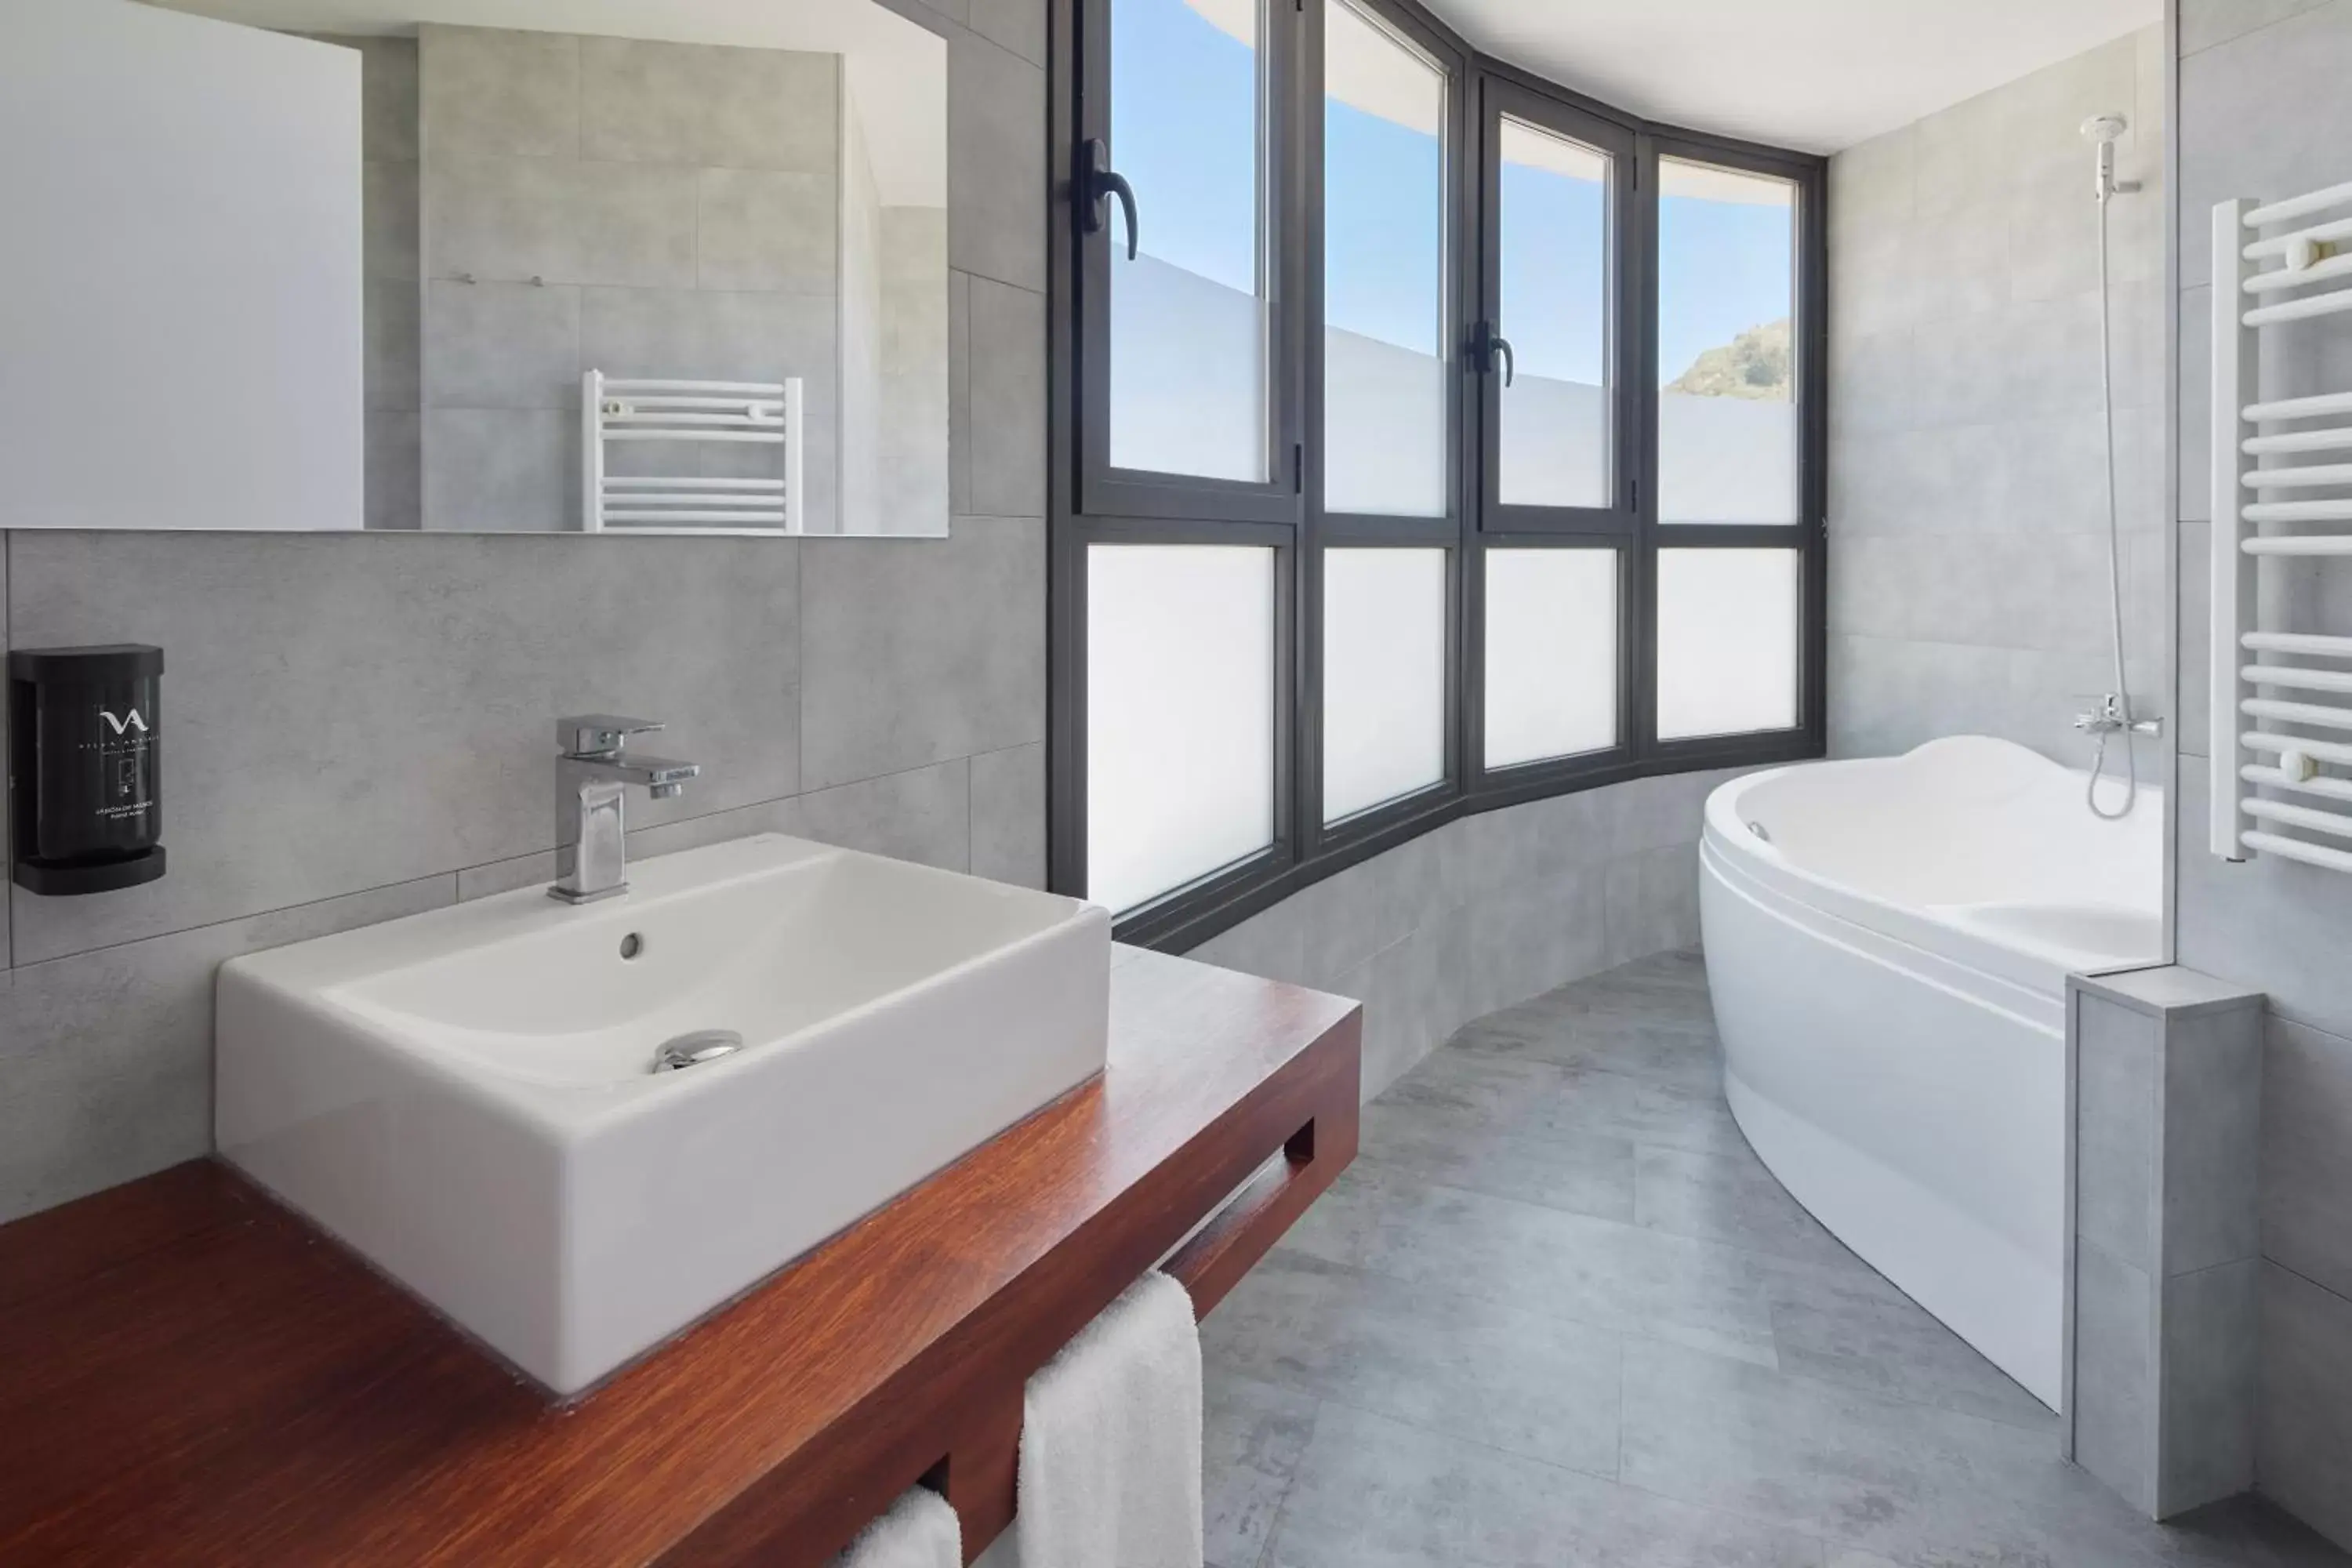 Bathroom in Hotel & Thalasso Villa Antilla - Habitaciones con Terraza - Thalasso incluida